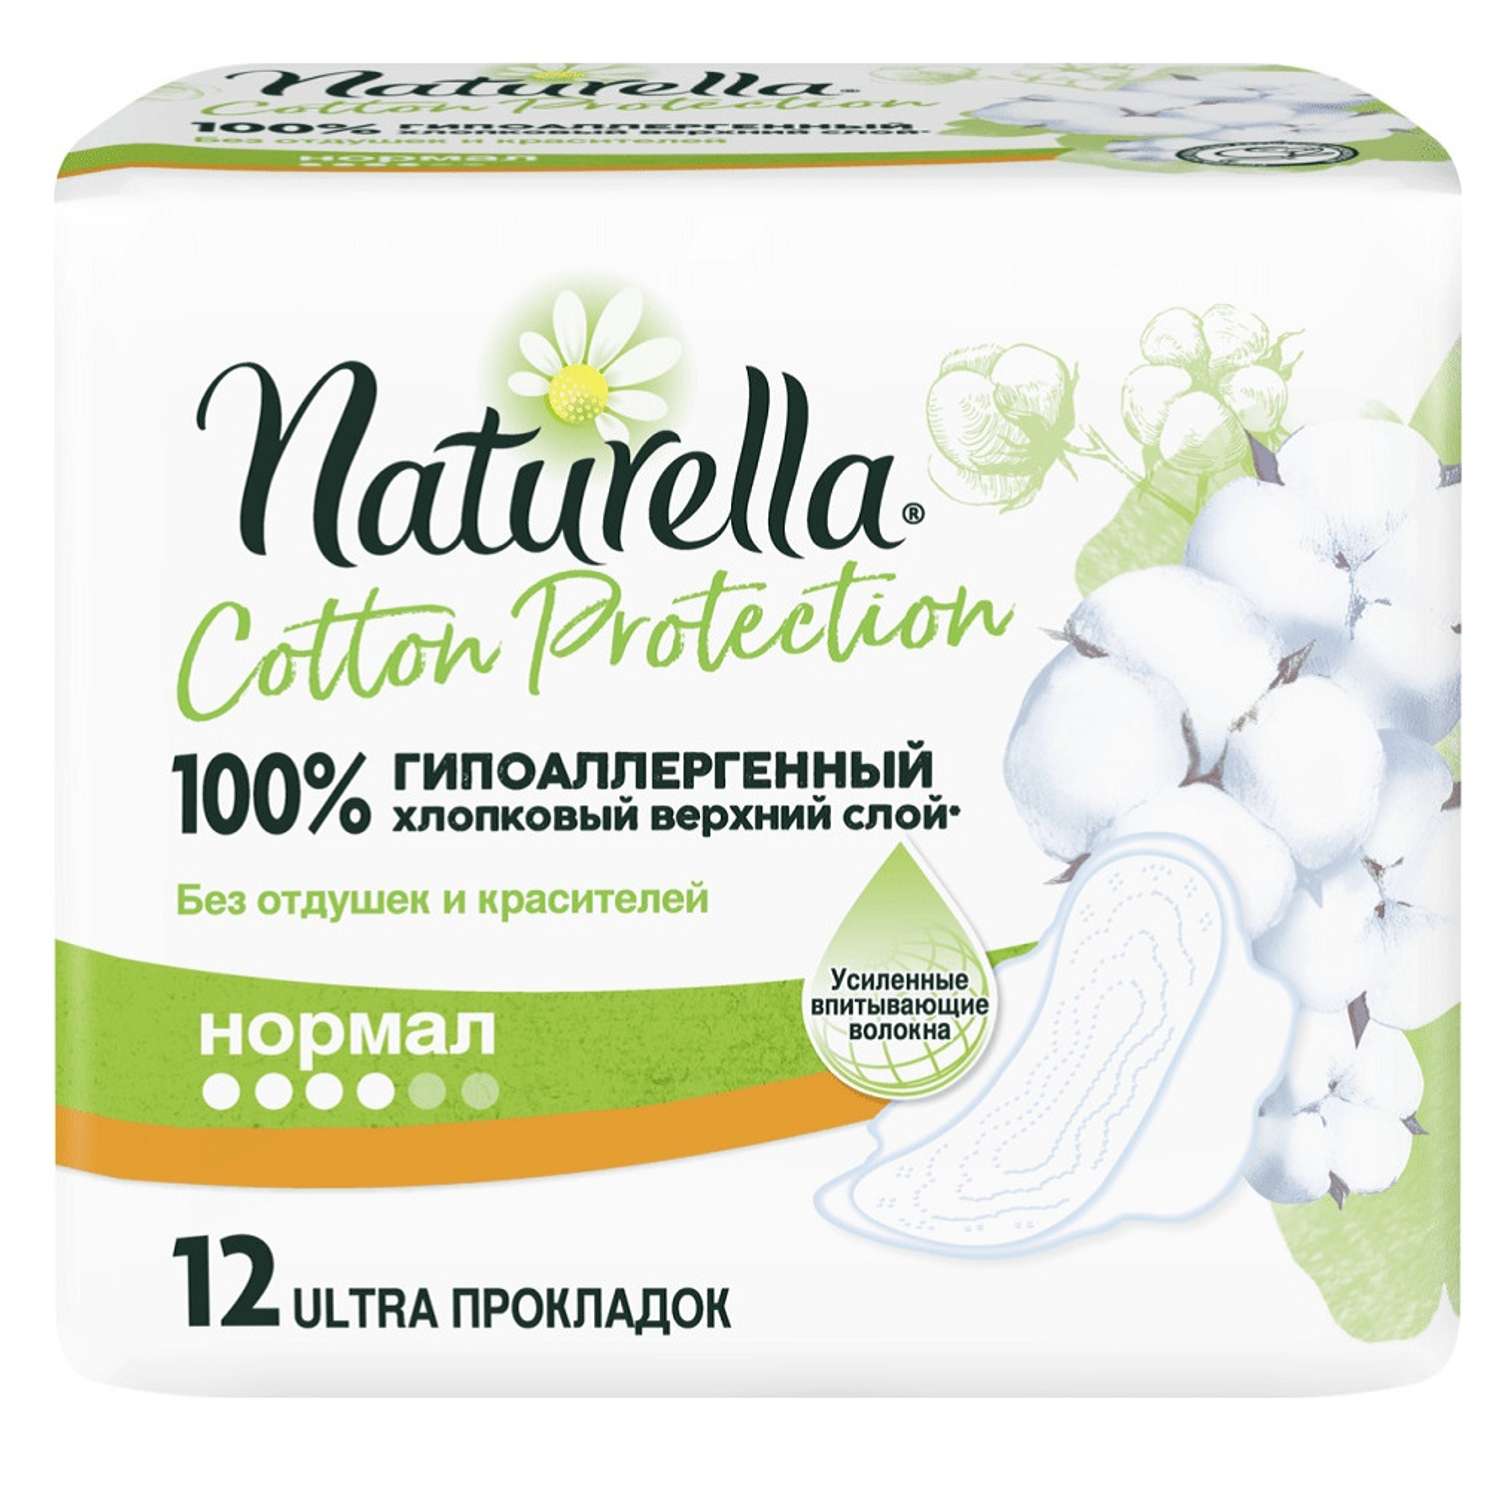 Прокладки Naturella Cotton Protection Maxi Single 10шт - фото 1